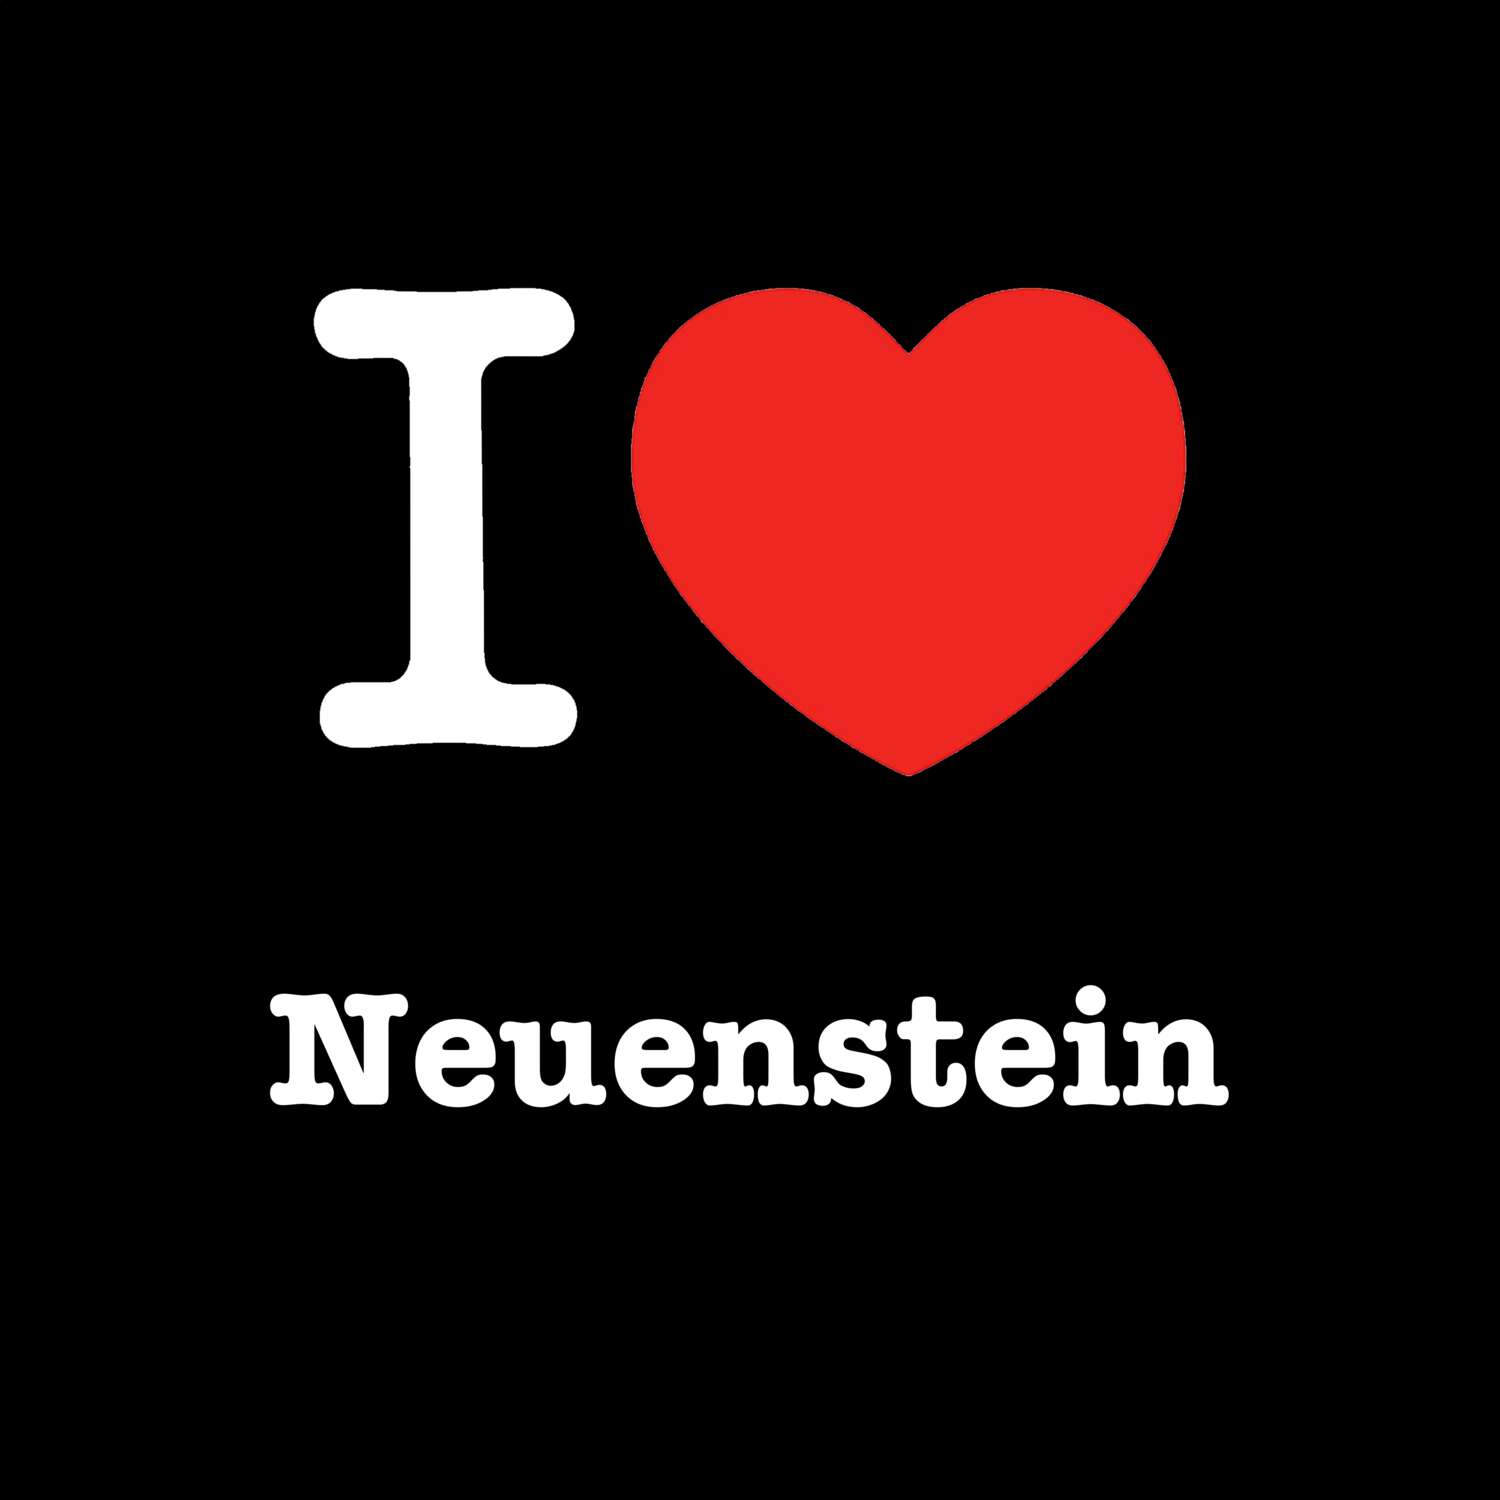 Neuenstein T-Shirt »I love«